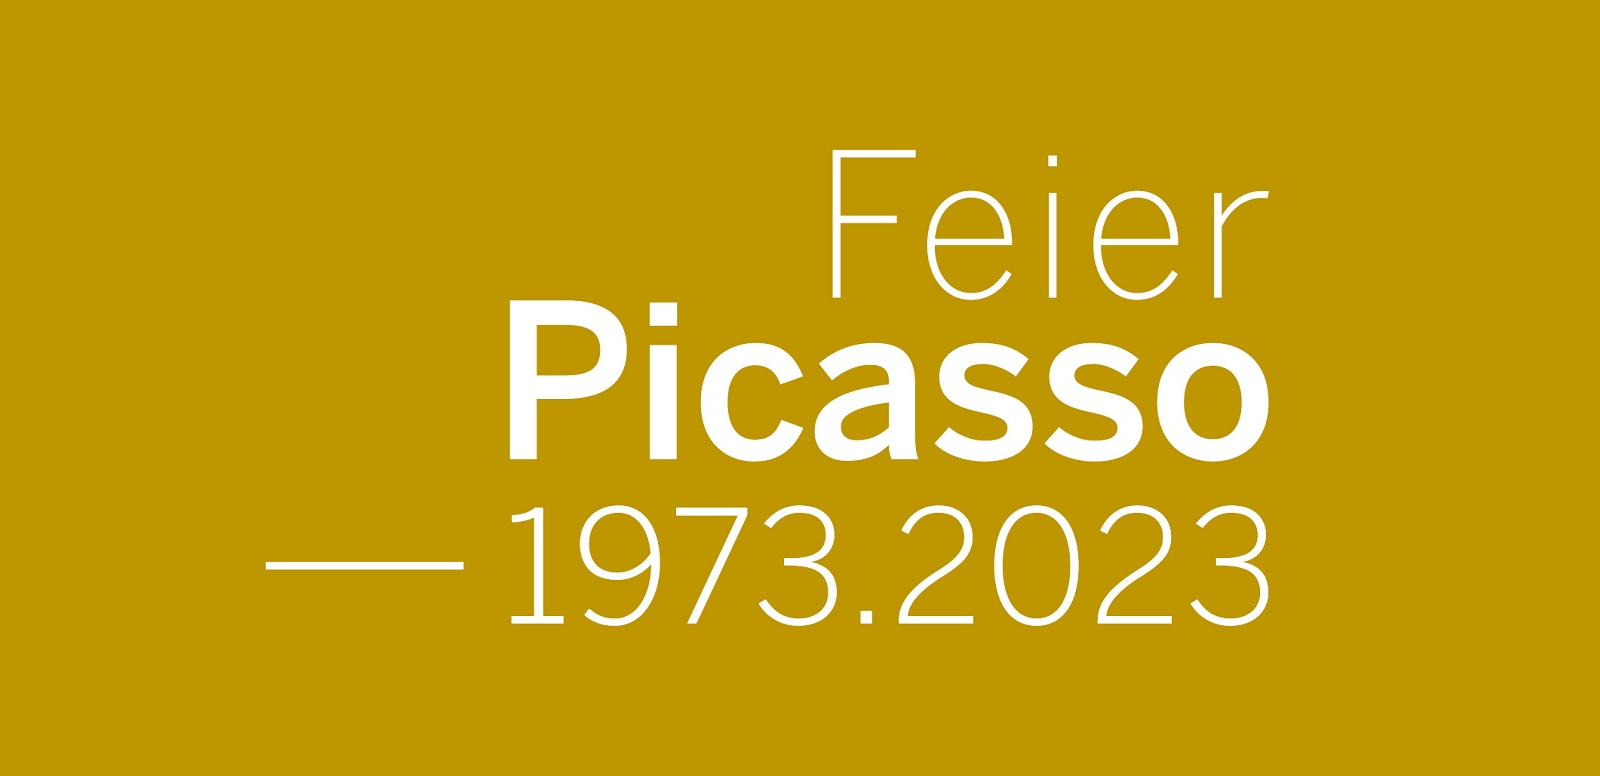 Feier Picasso 1973-2023